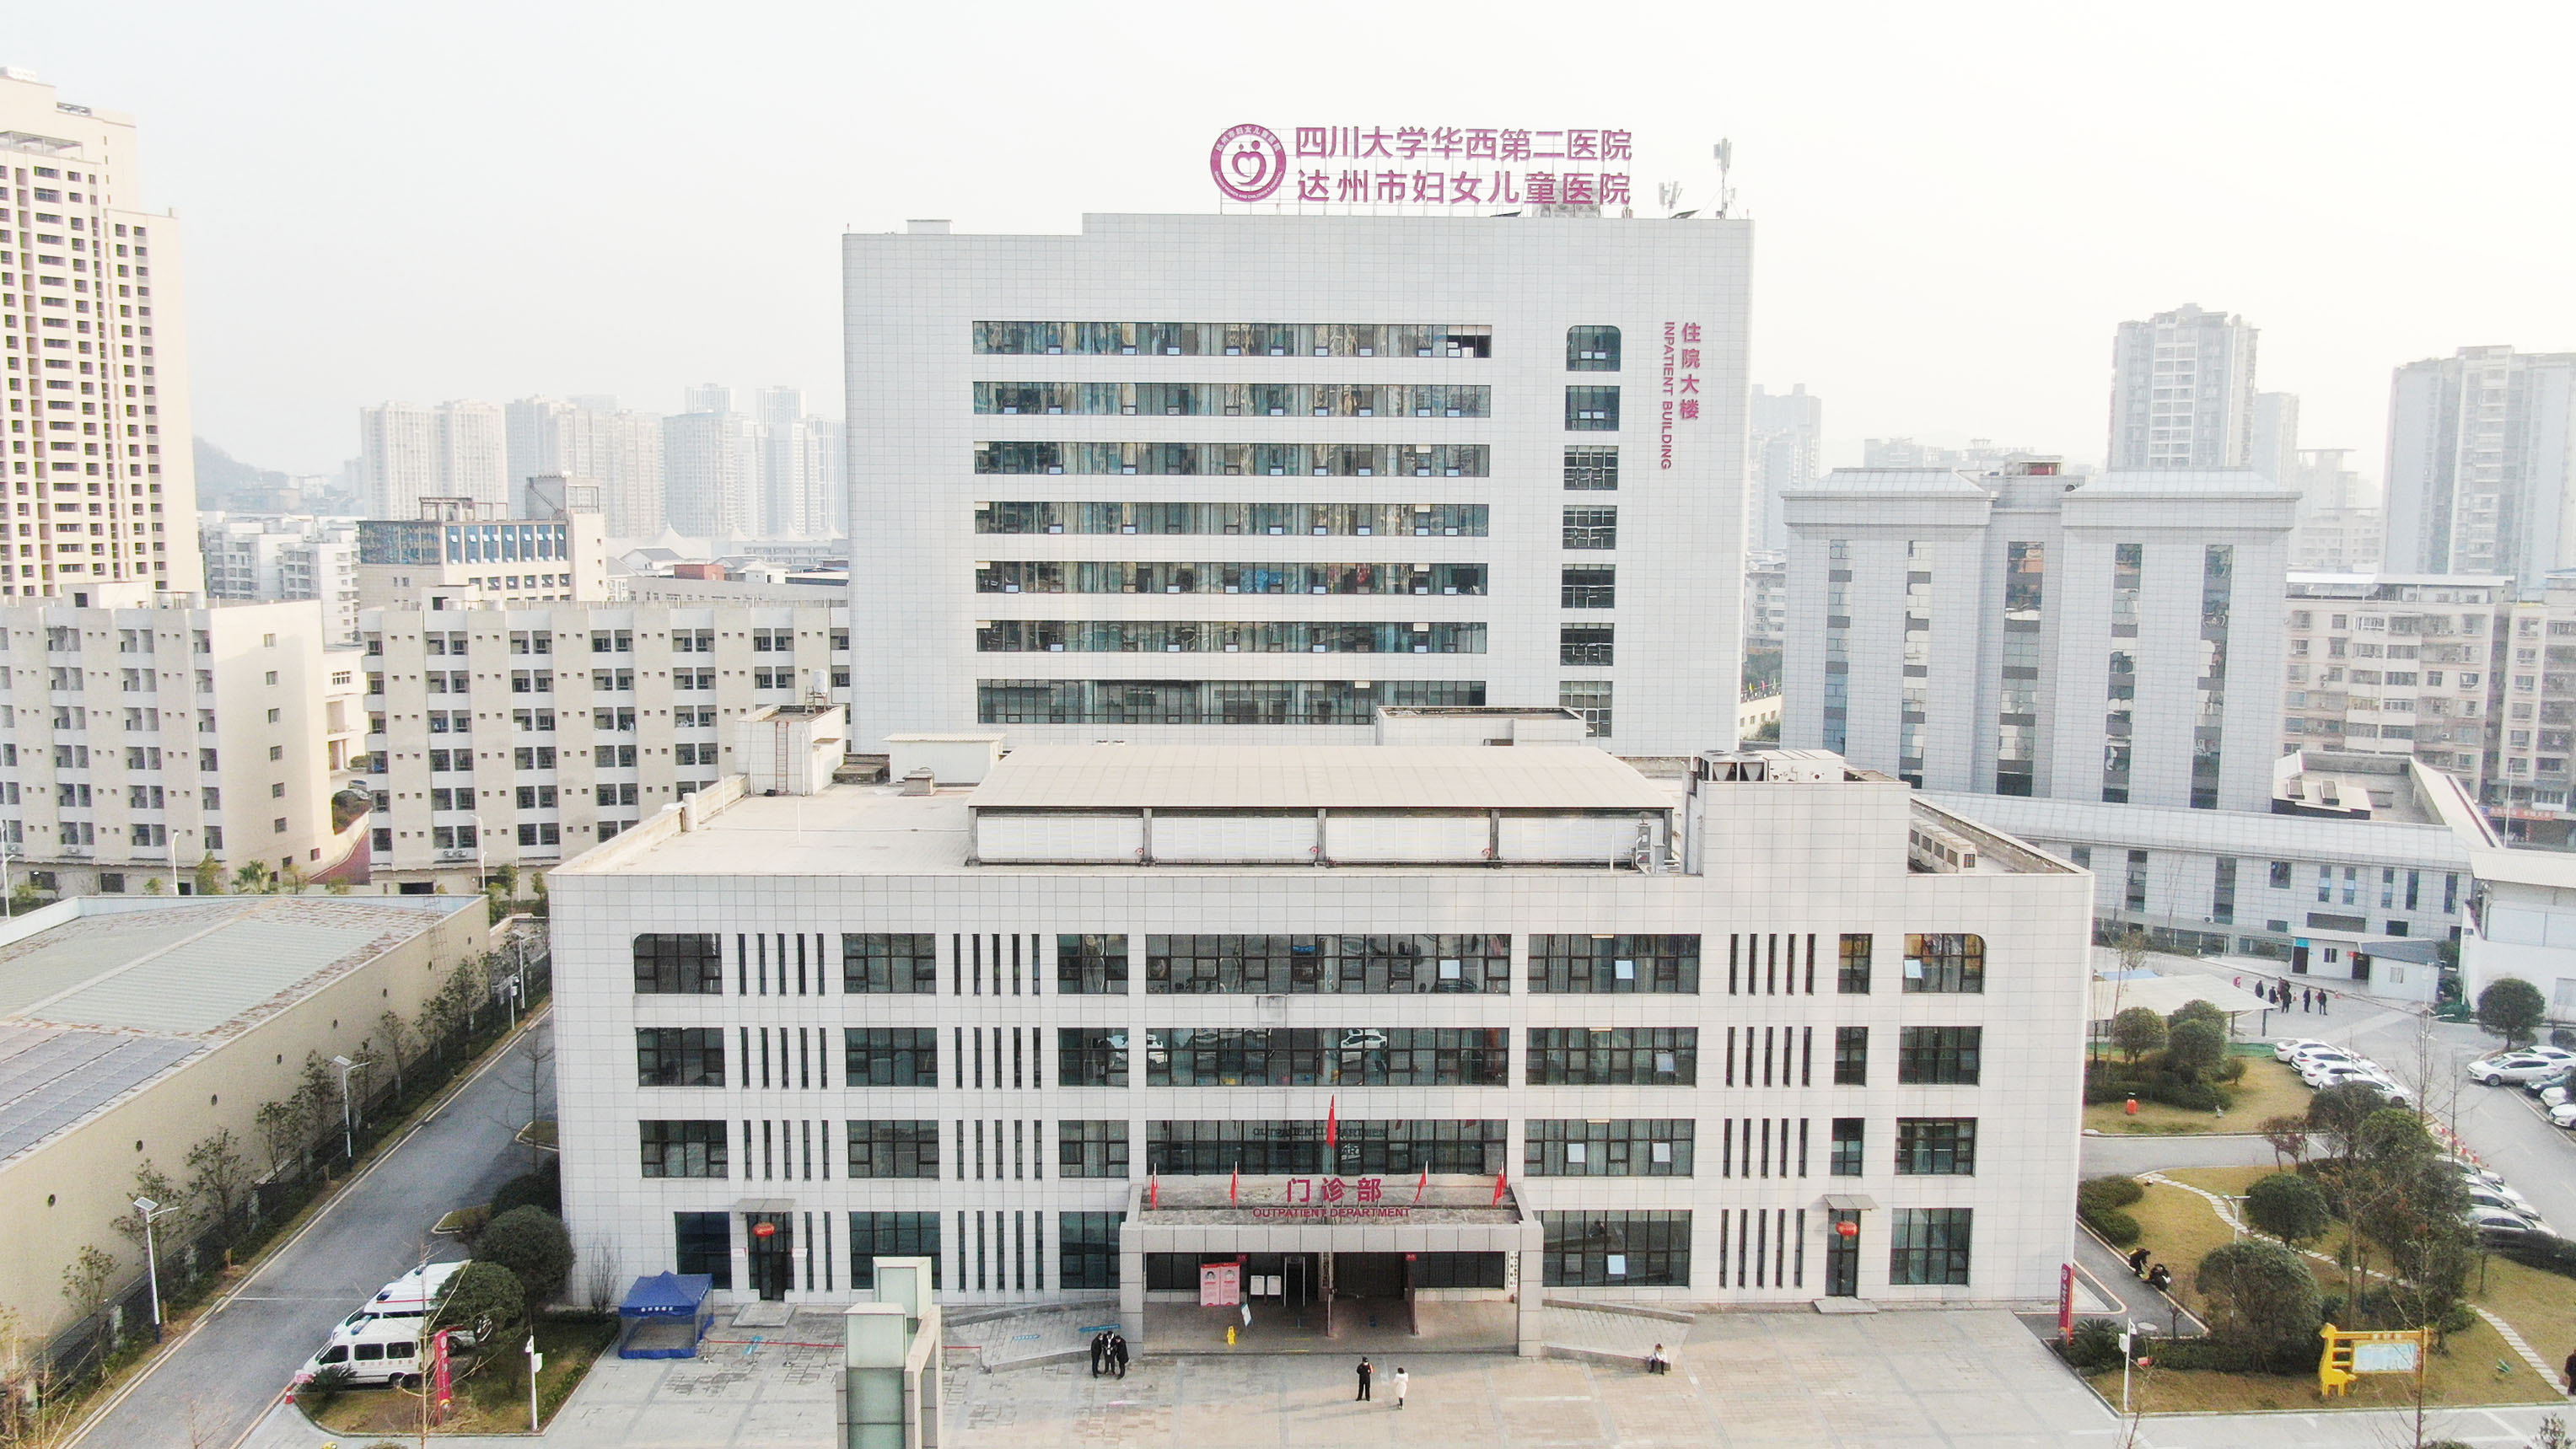 湖南妇女儿童医院志愿者招募计划启动 - 资讯广场 - 华声在线